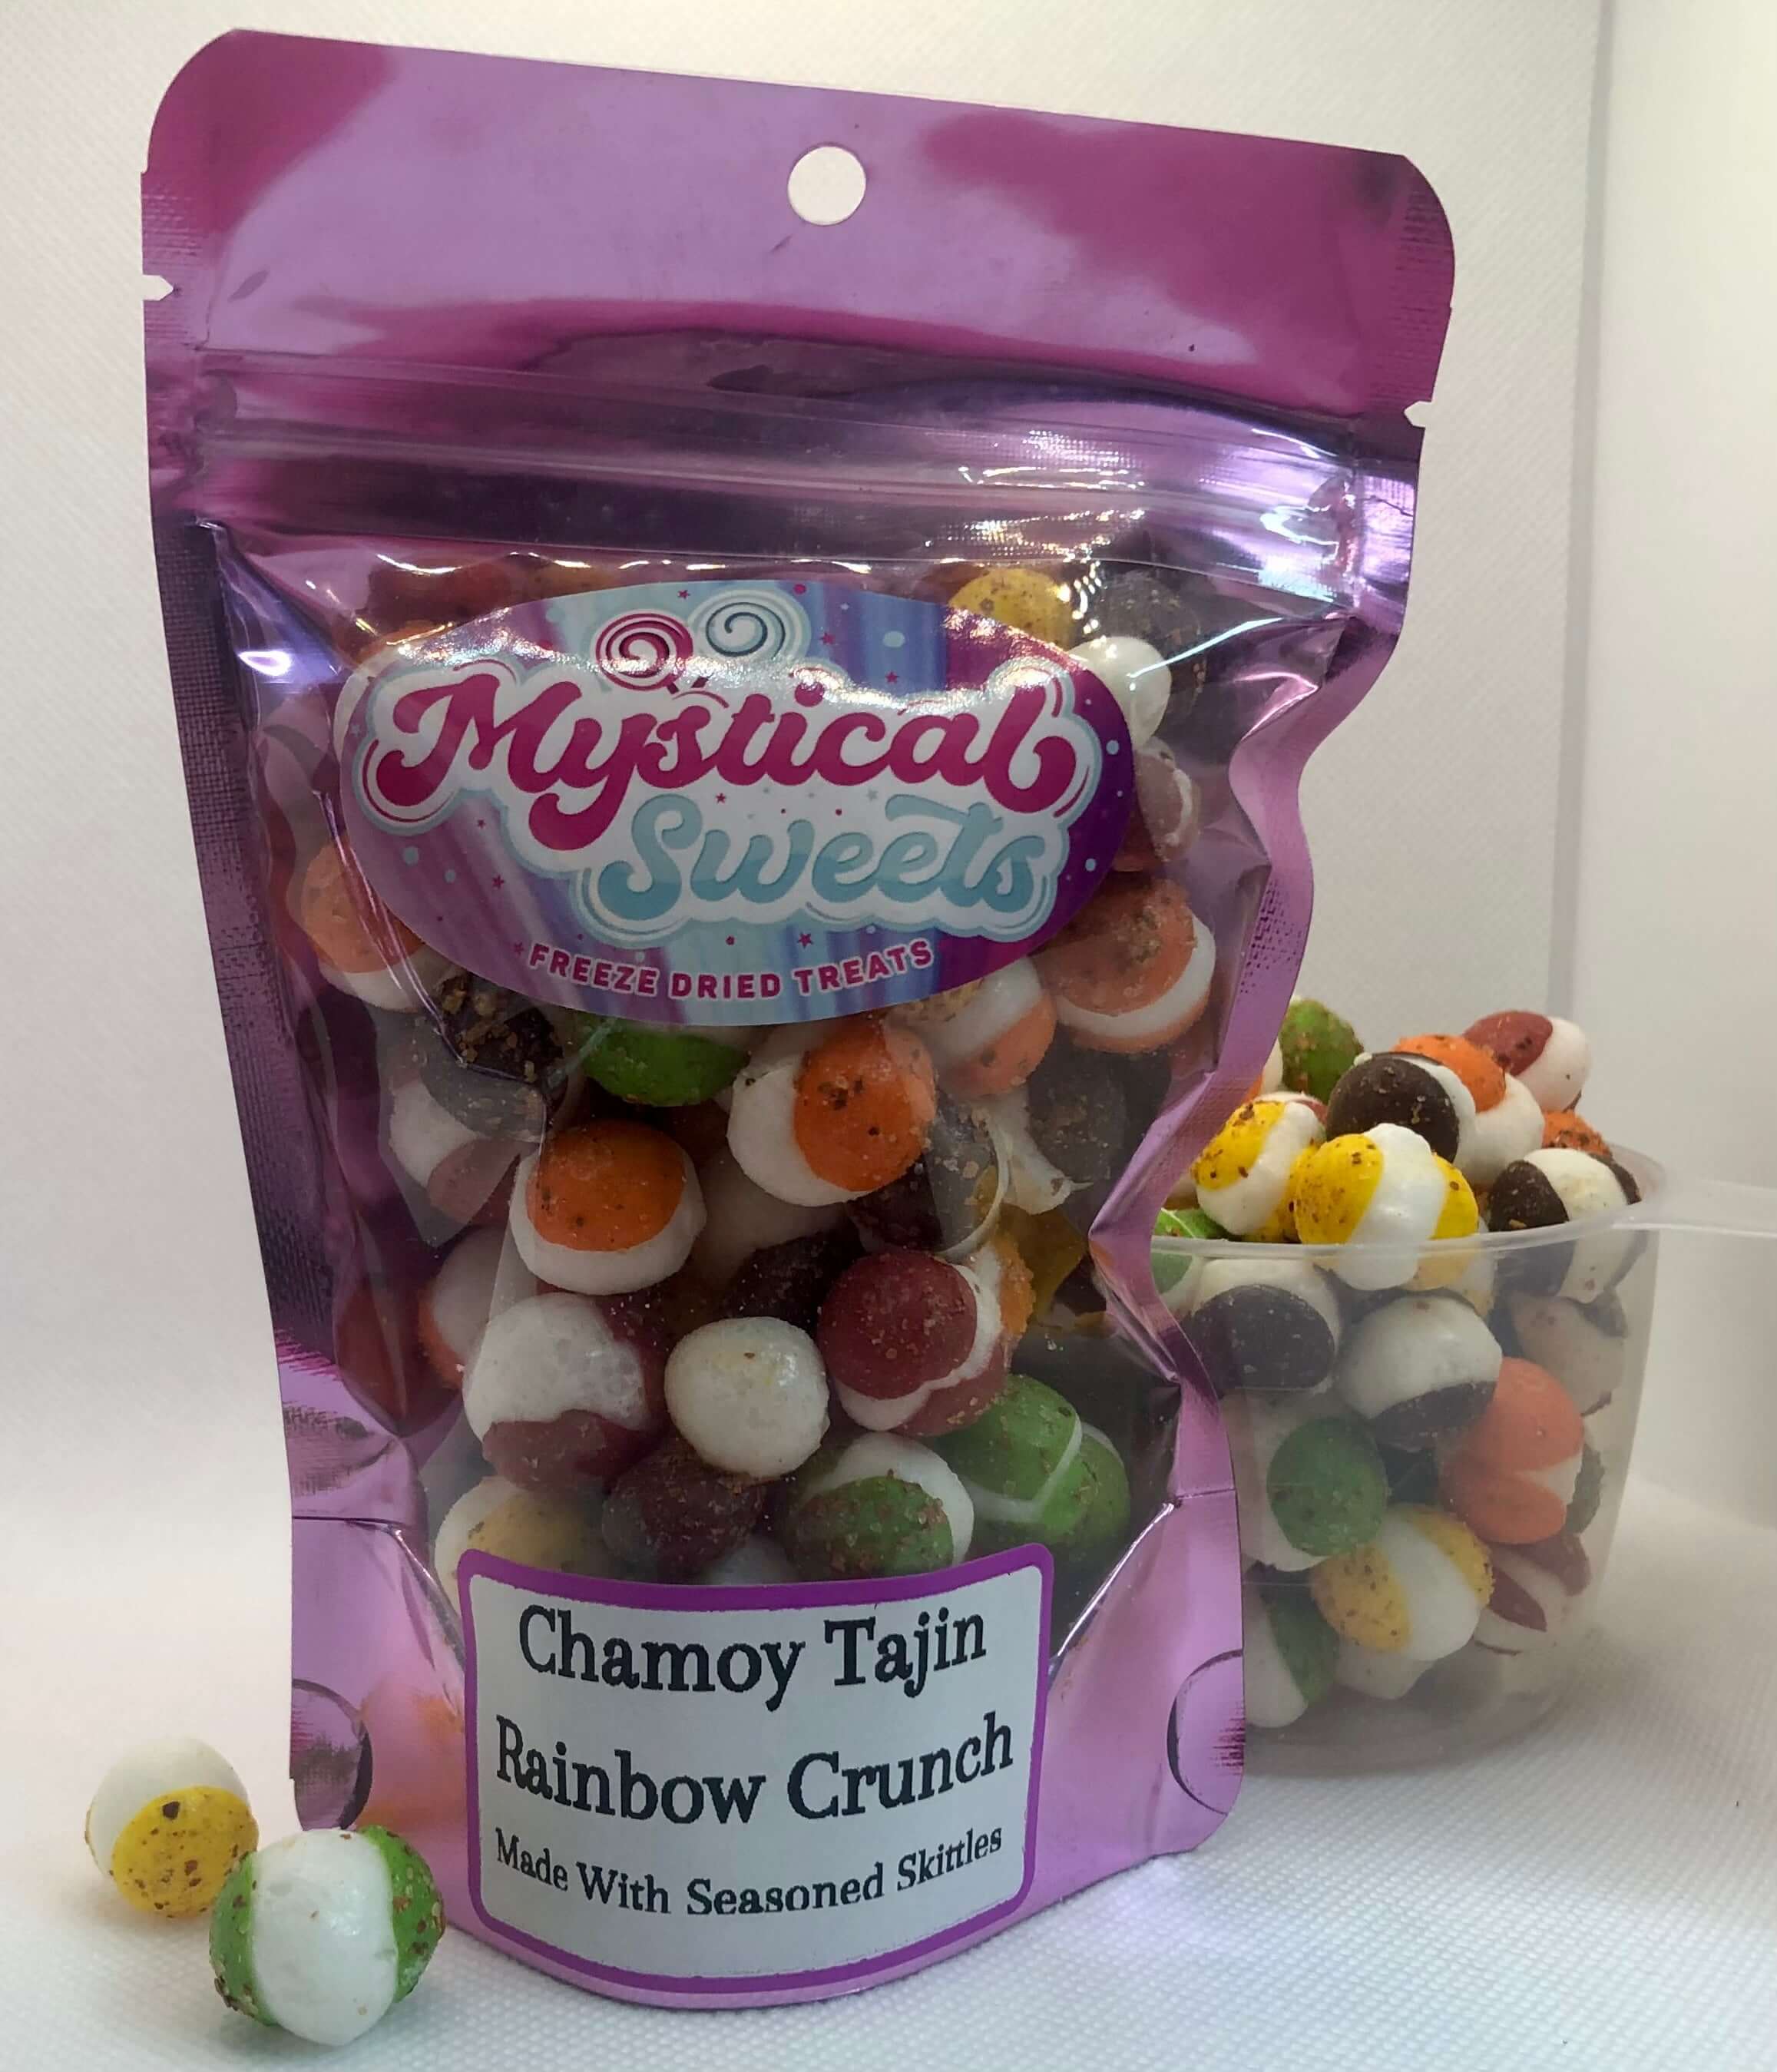 Chamory Tajin Rainbow Crunch